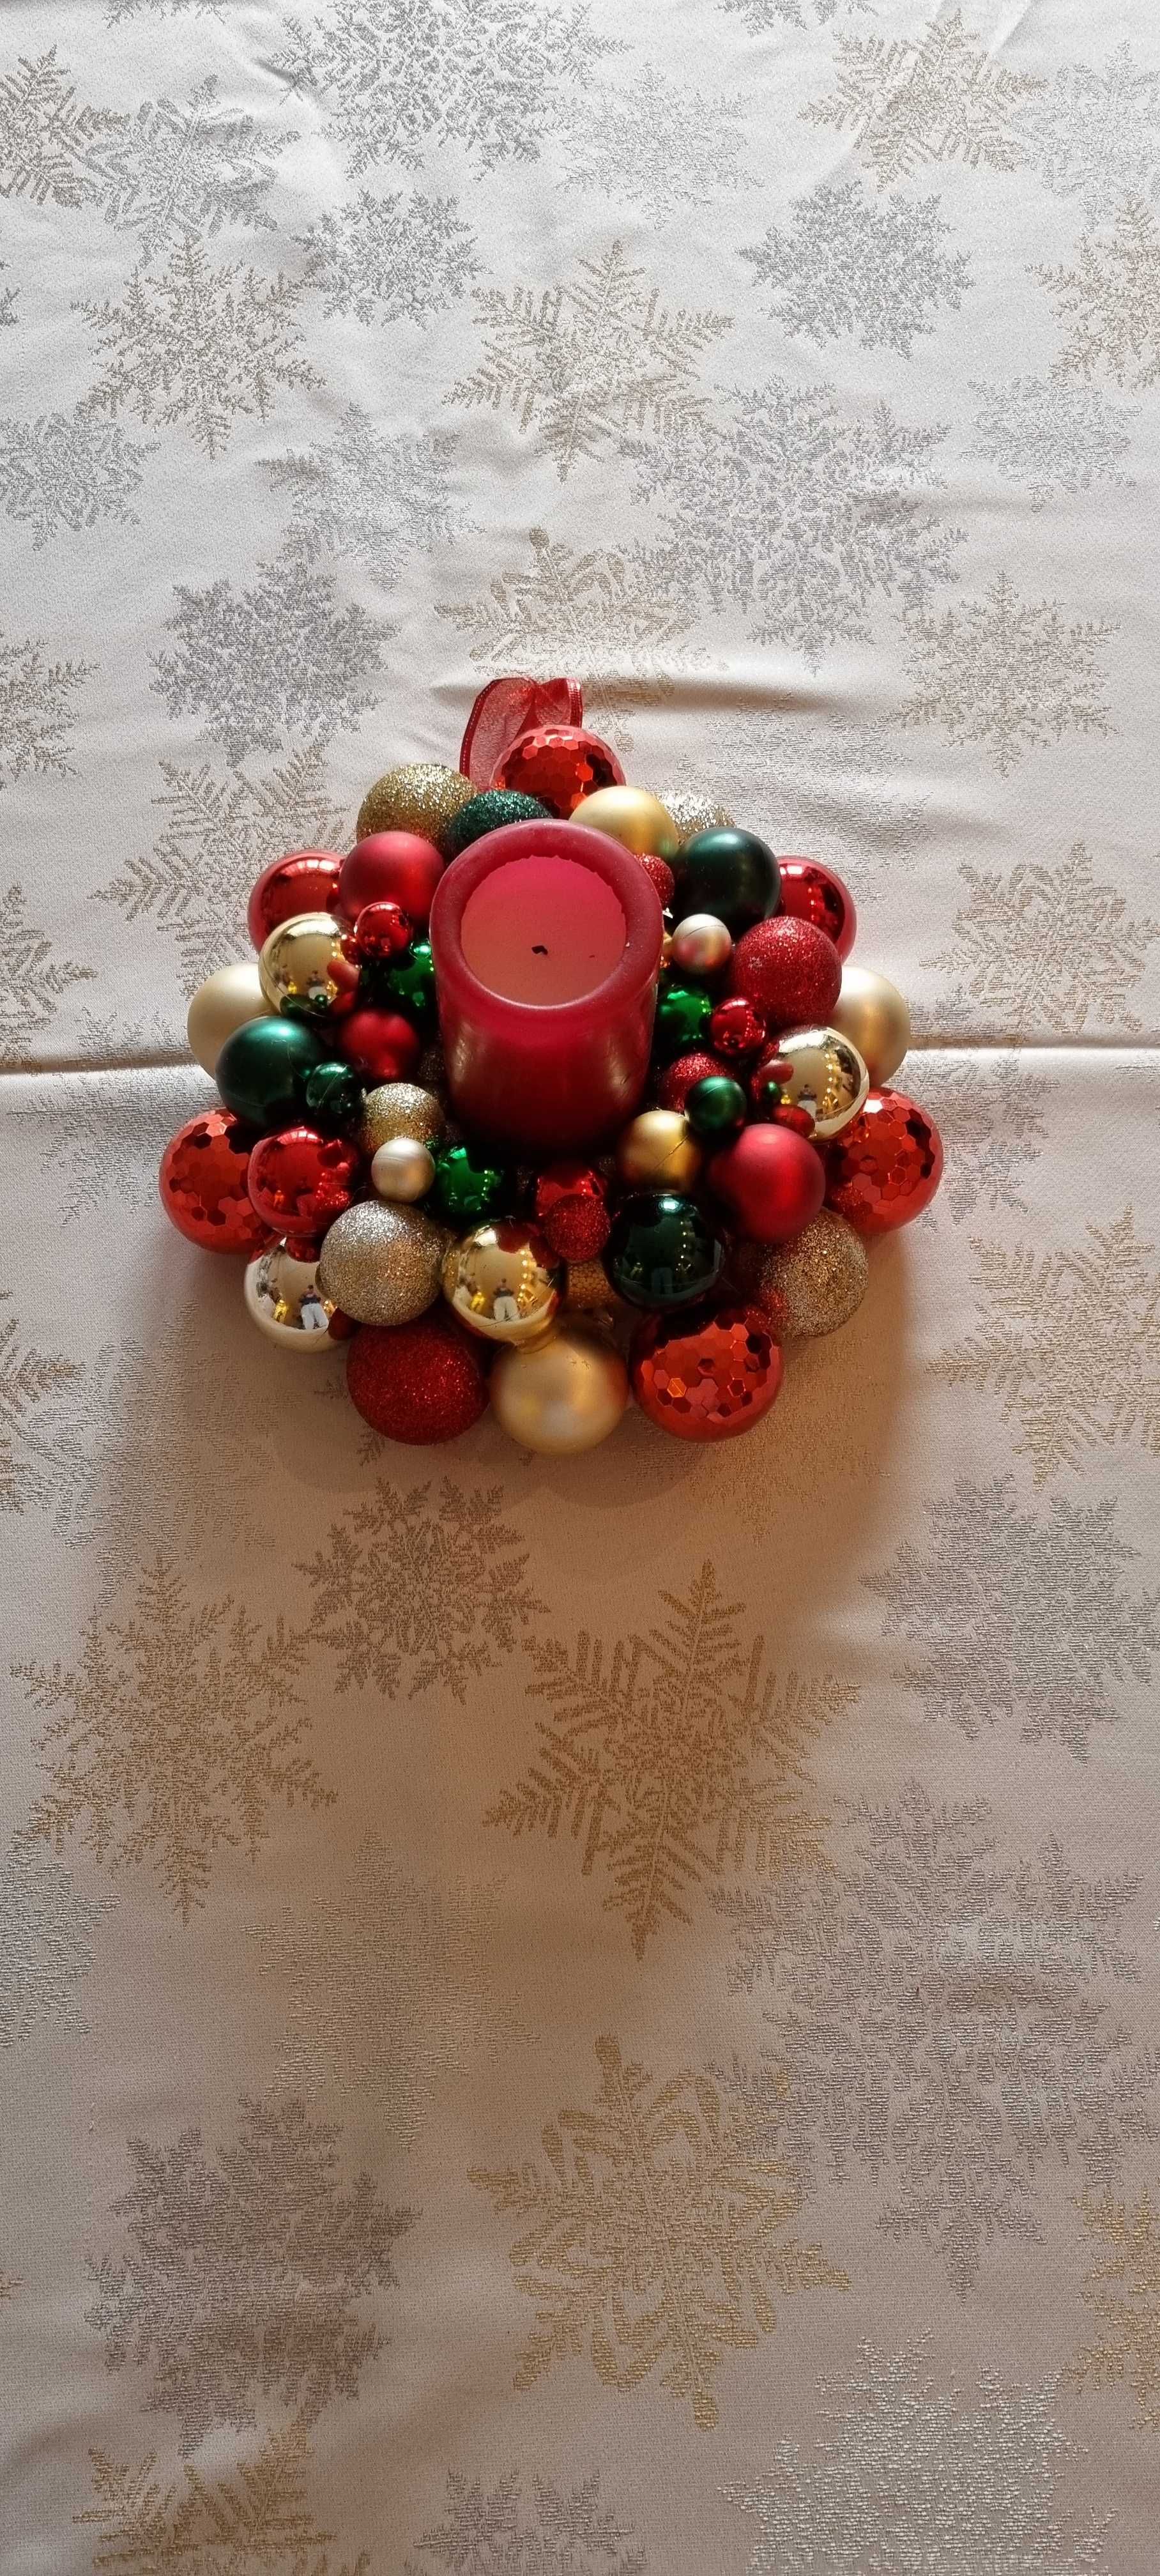 Wieniec wianek świąteczny Boże Narodzenie ręcznie wykonany handmade